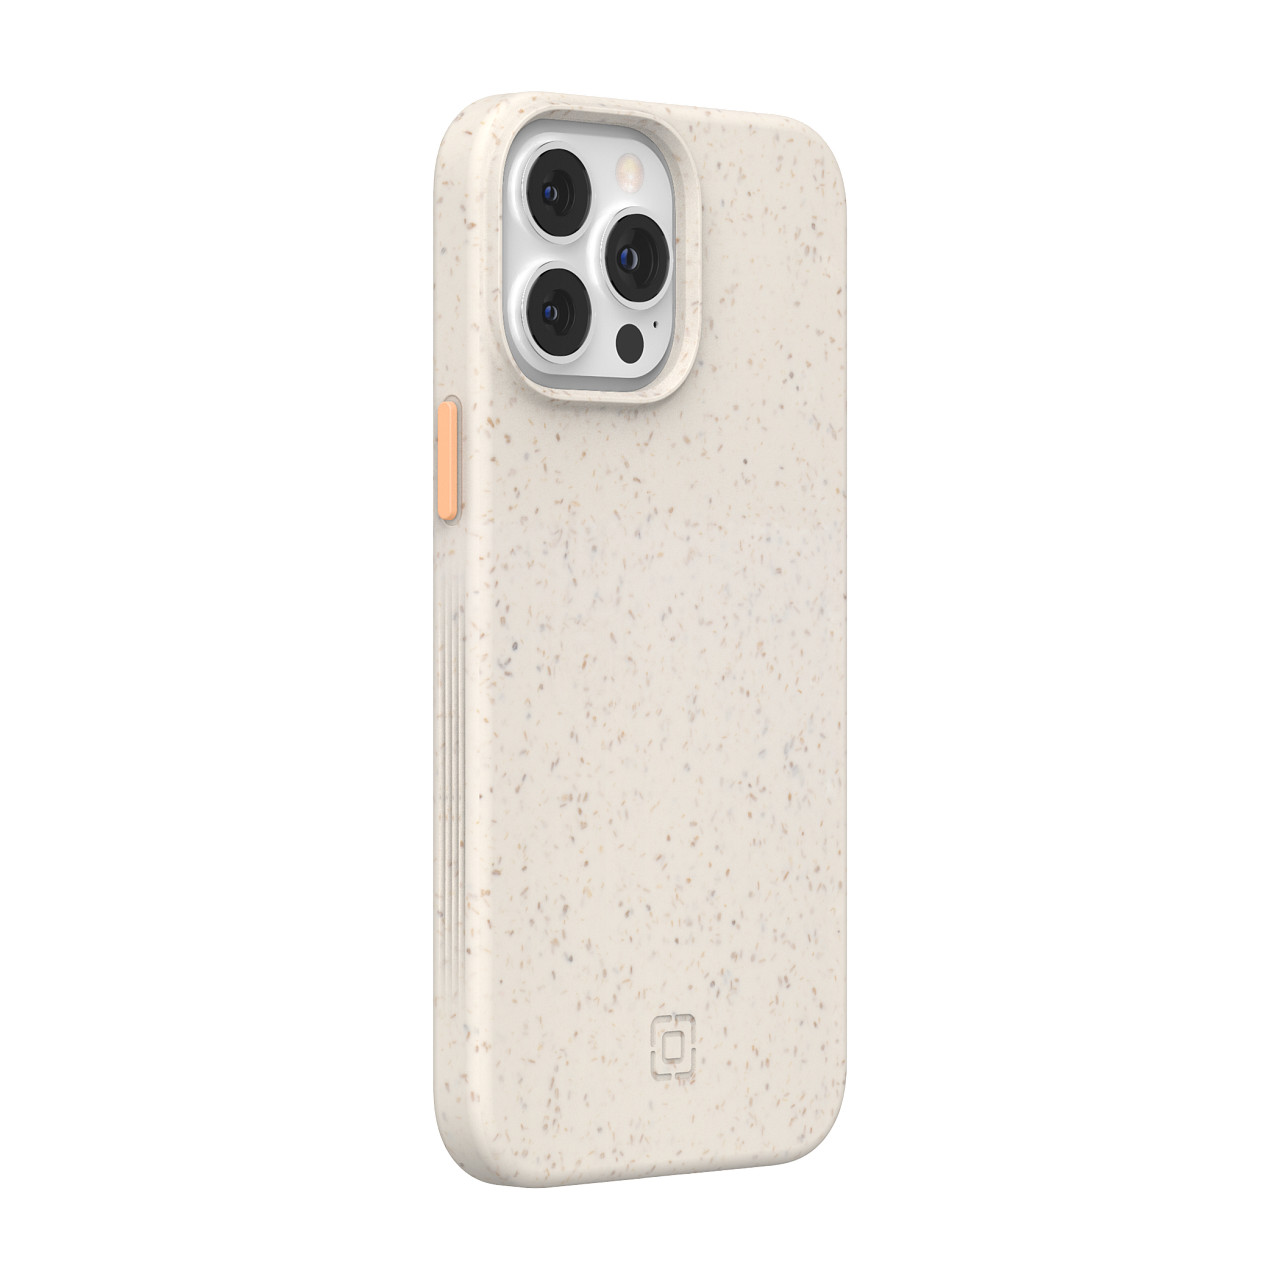 เคส Incipio รุ่น Organicore - iPhone 13 Pro Max - Natural/Peach